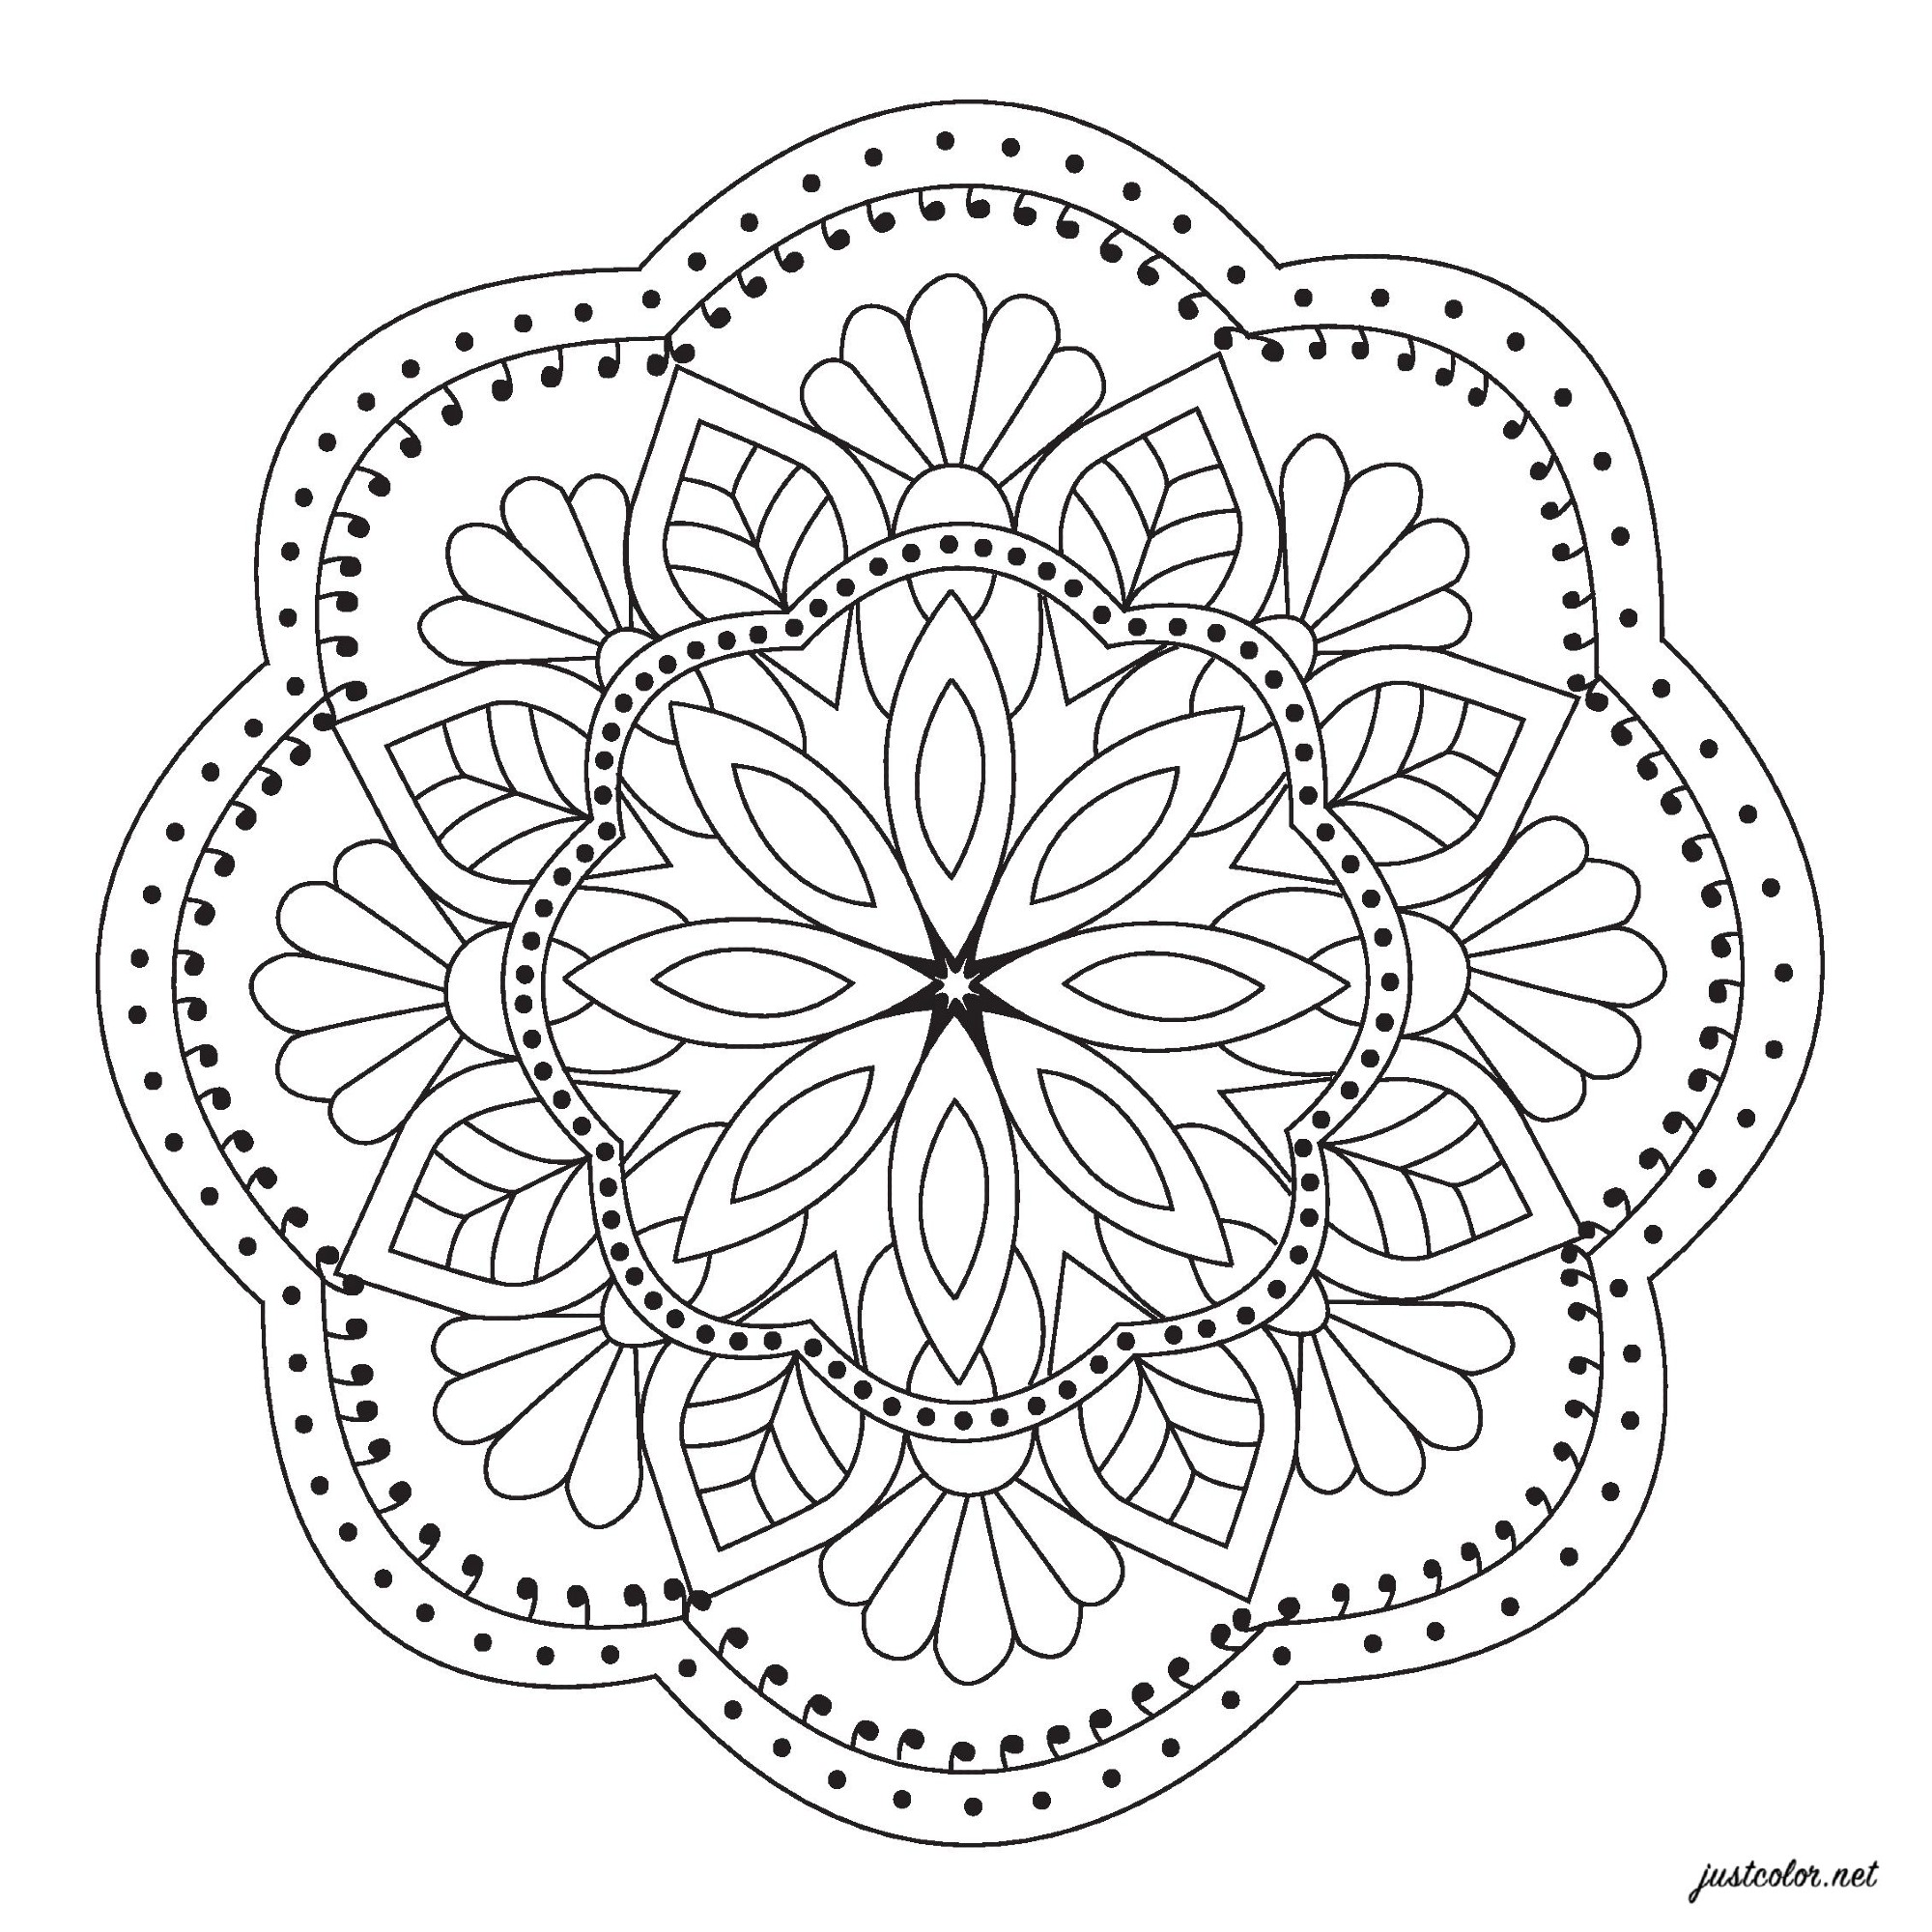 Coloriez ce Mandala assez simple ressemblant à une jolie fleur, Artiste : Pierre C